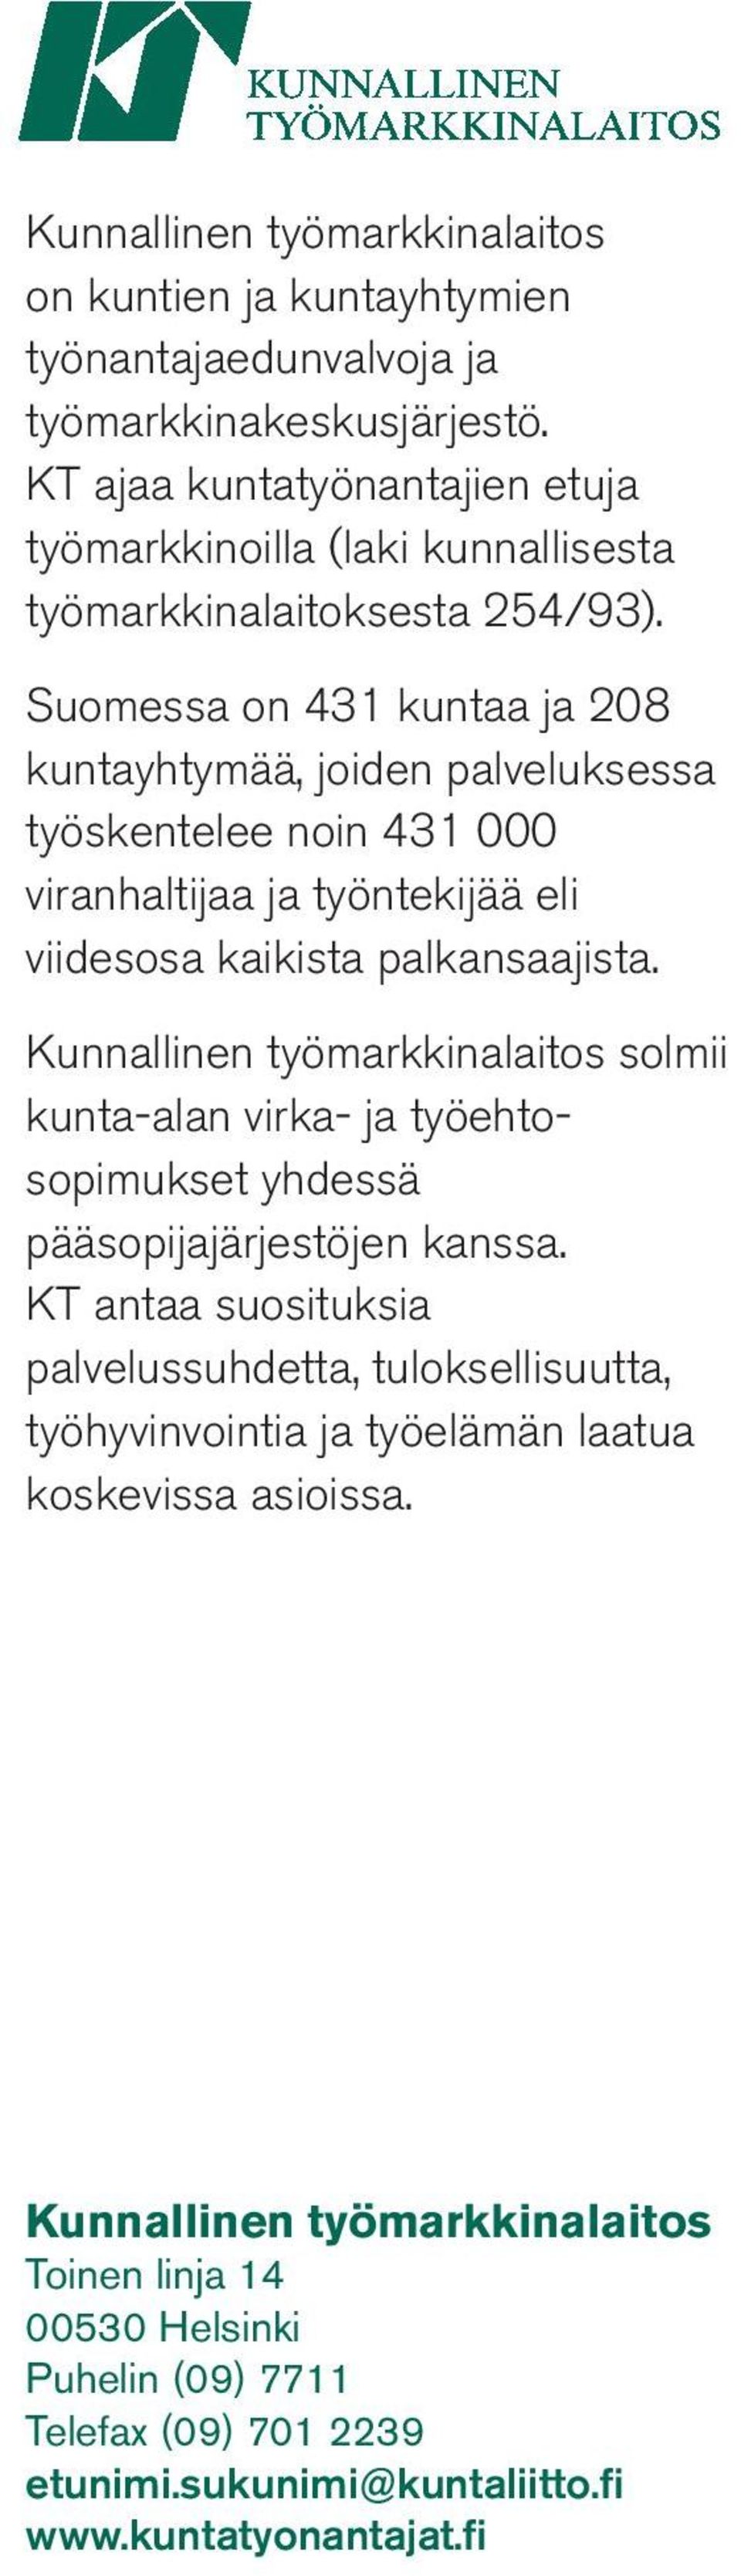 Suomessa on 431 kuntaa ja 208 kuntayhtymää, joiden palveluksessa työskentelee noin 431 000 viranhaltijaa ja työntekijää eli viidesosa kaikista palkansaajista.